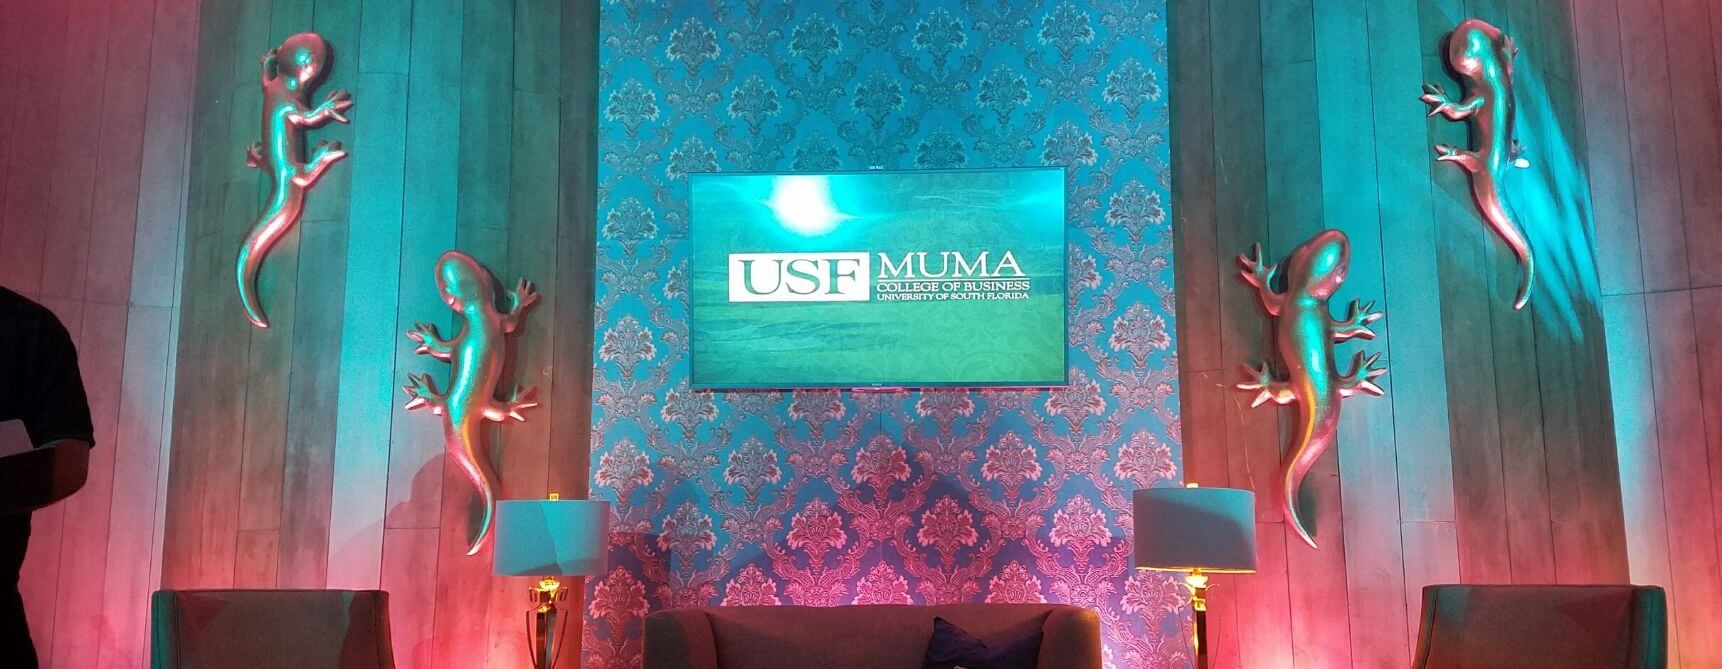 3 USF MUMA Event